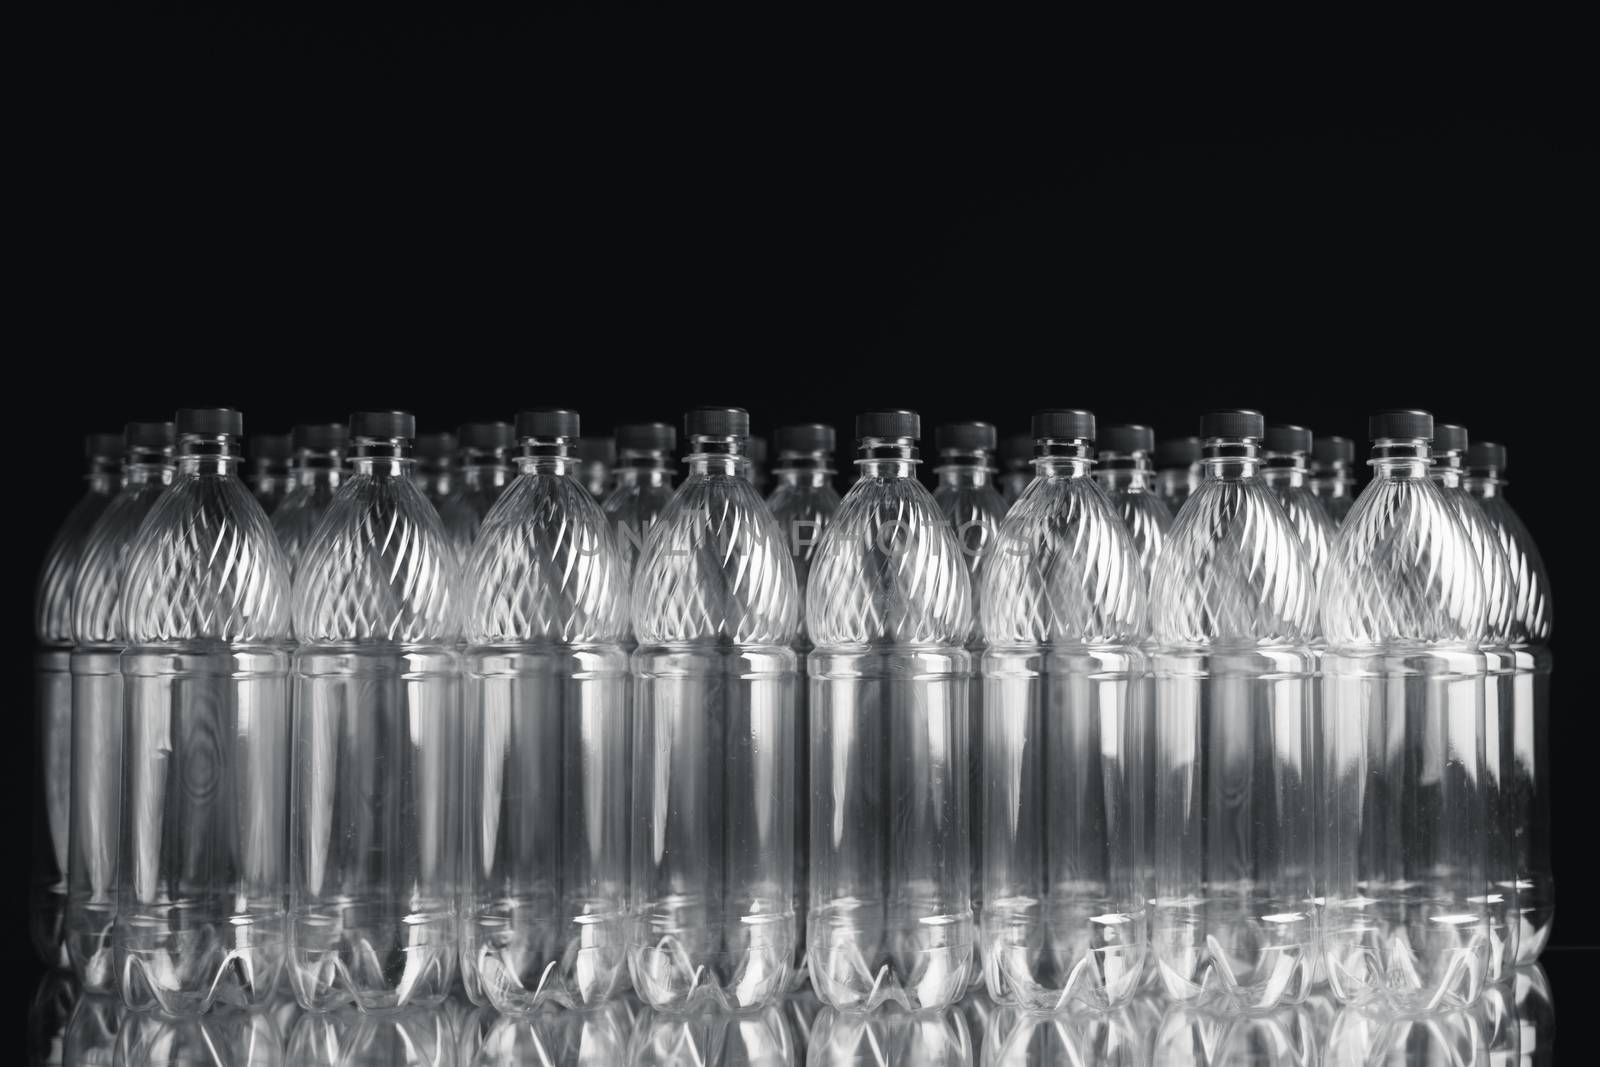 empty plastic bottles on black background by nikkytok